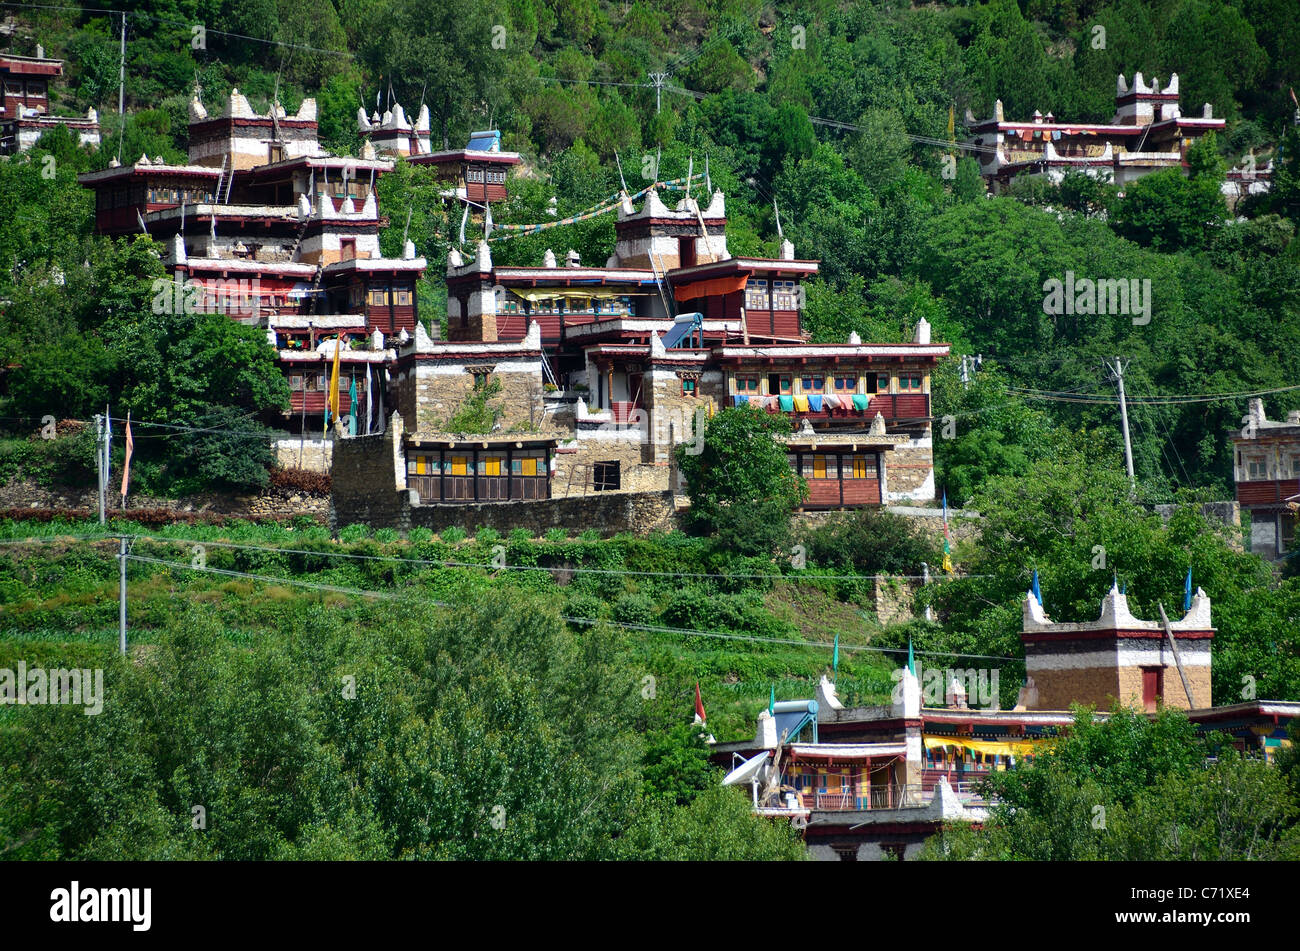 Tibetischen Stil Steinhäusern auf einem grünen Hügel. Sichuan, China. Stockfoto